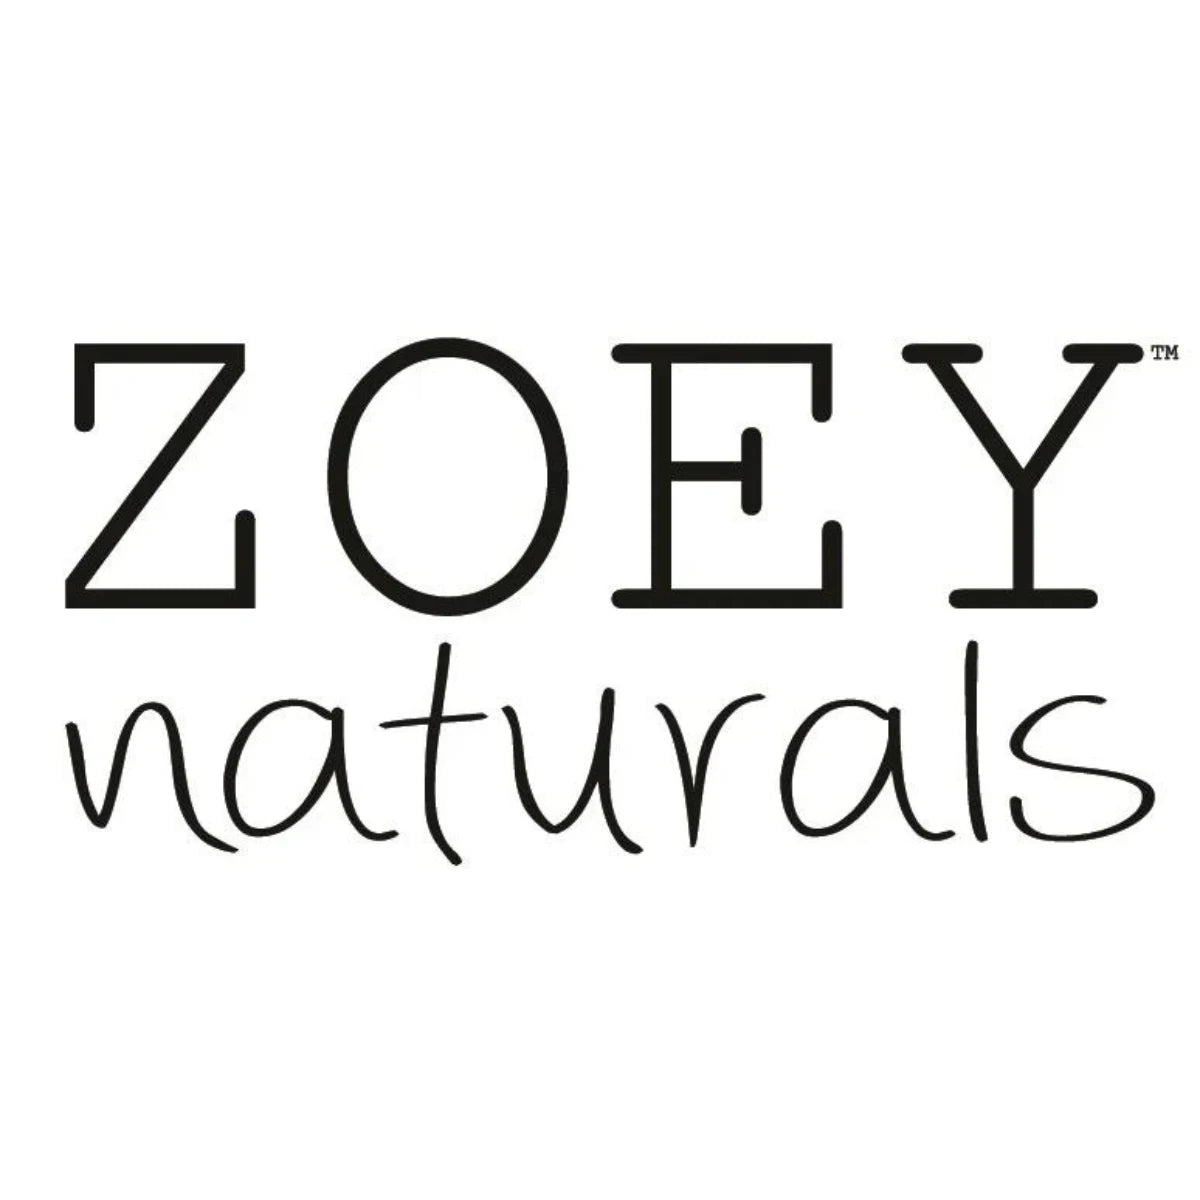 Zoey Naturals